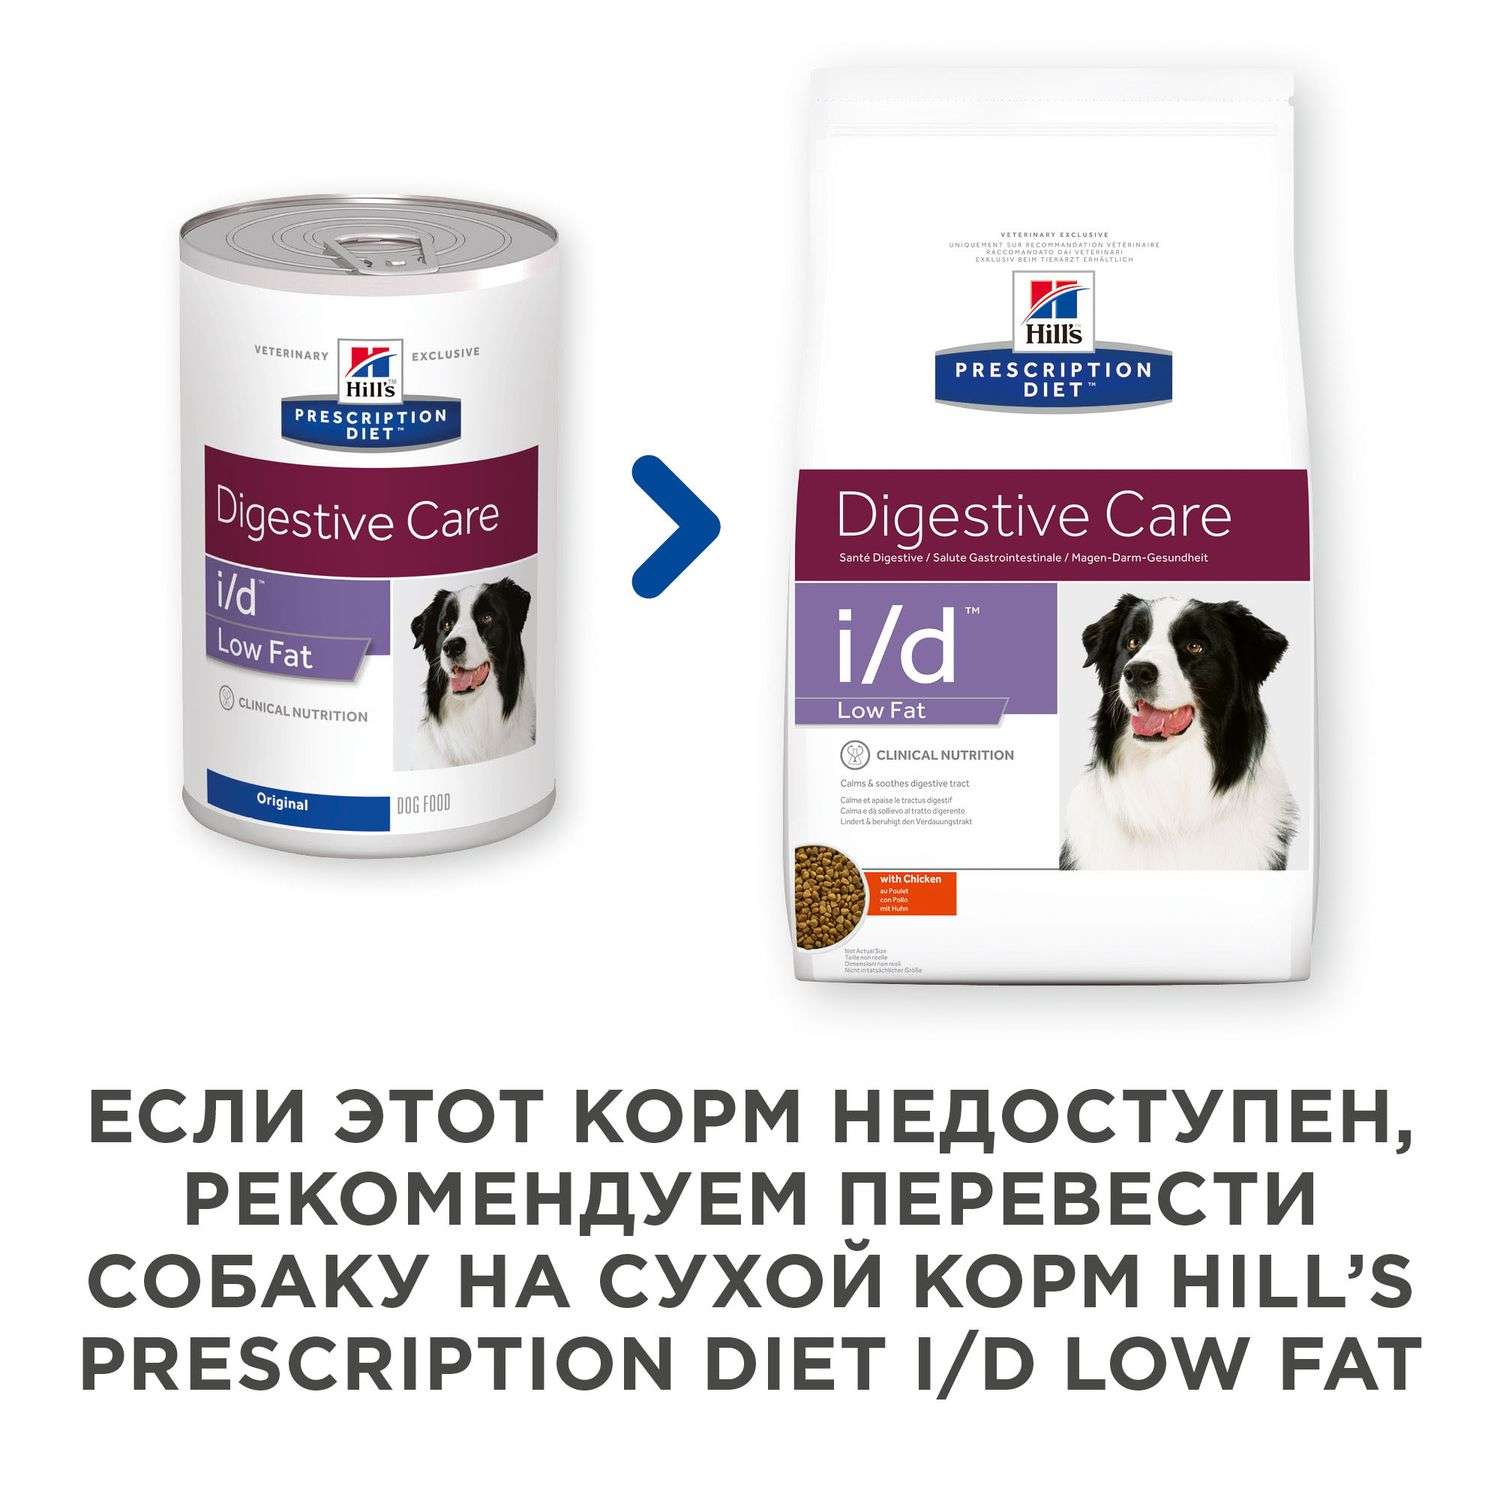 Корм для собак HILLS 360г Prescription Diet i/d LowFat DigestiveCare для ЖКТ и поджелудочной железы консервированный - фото 5